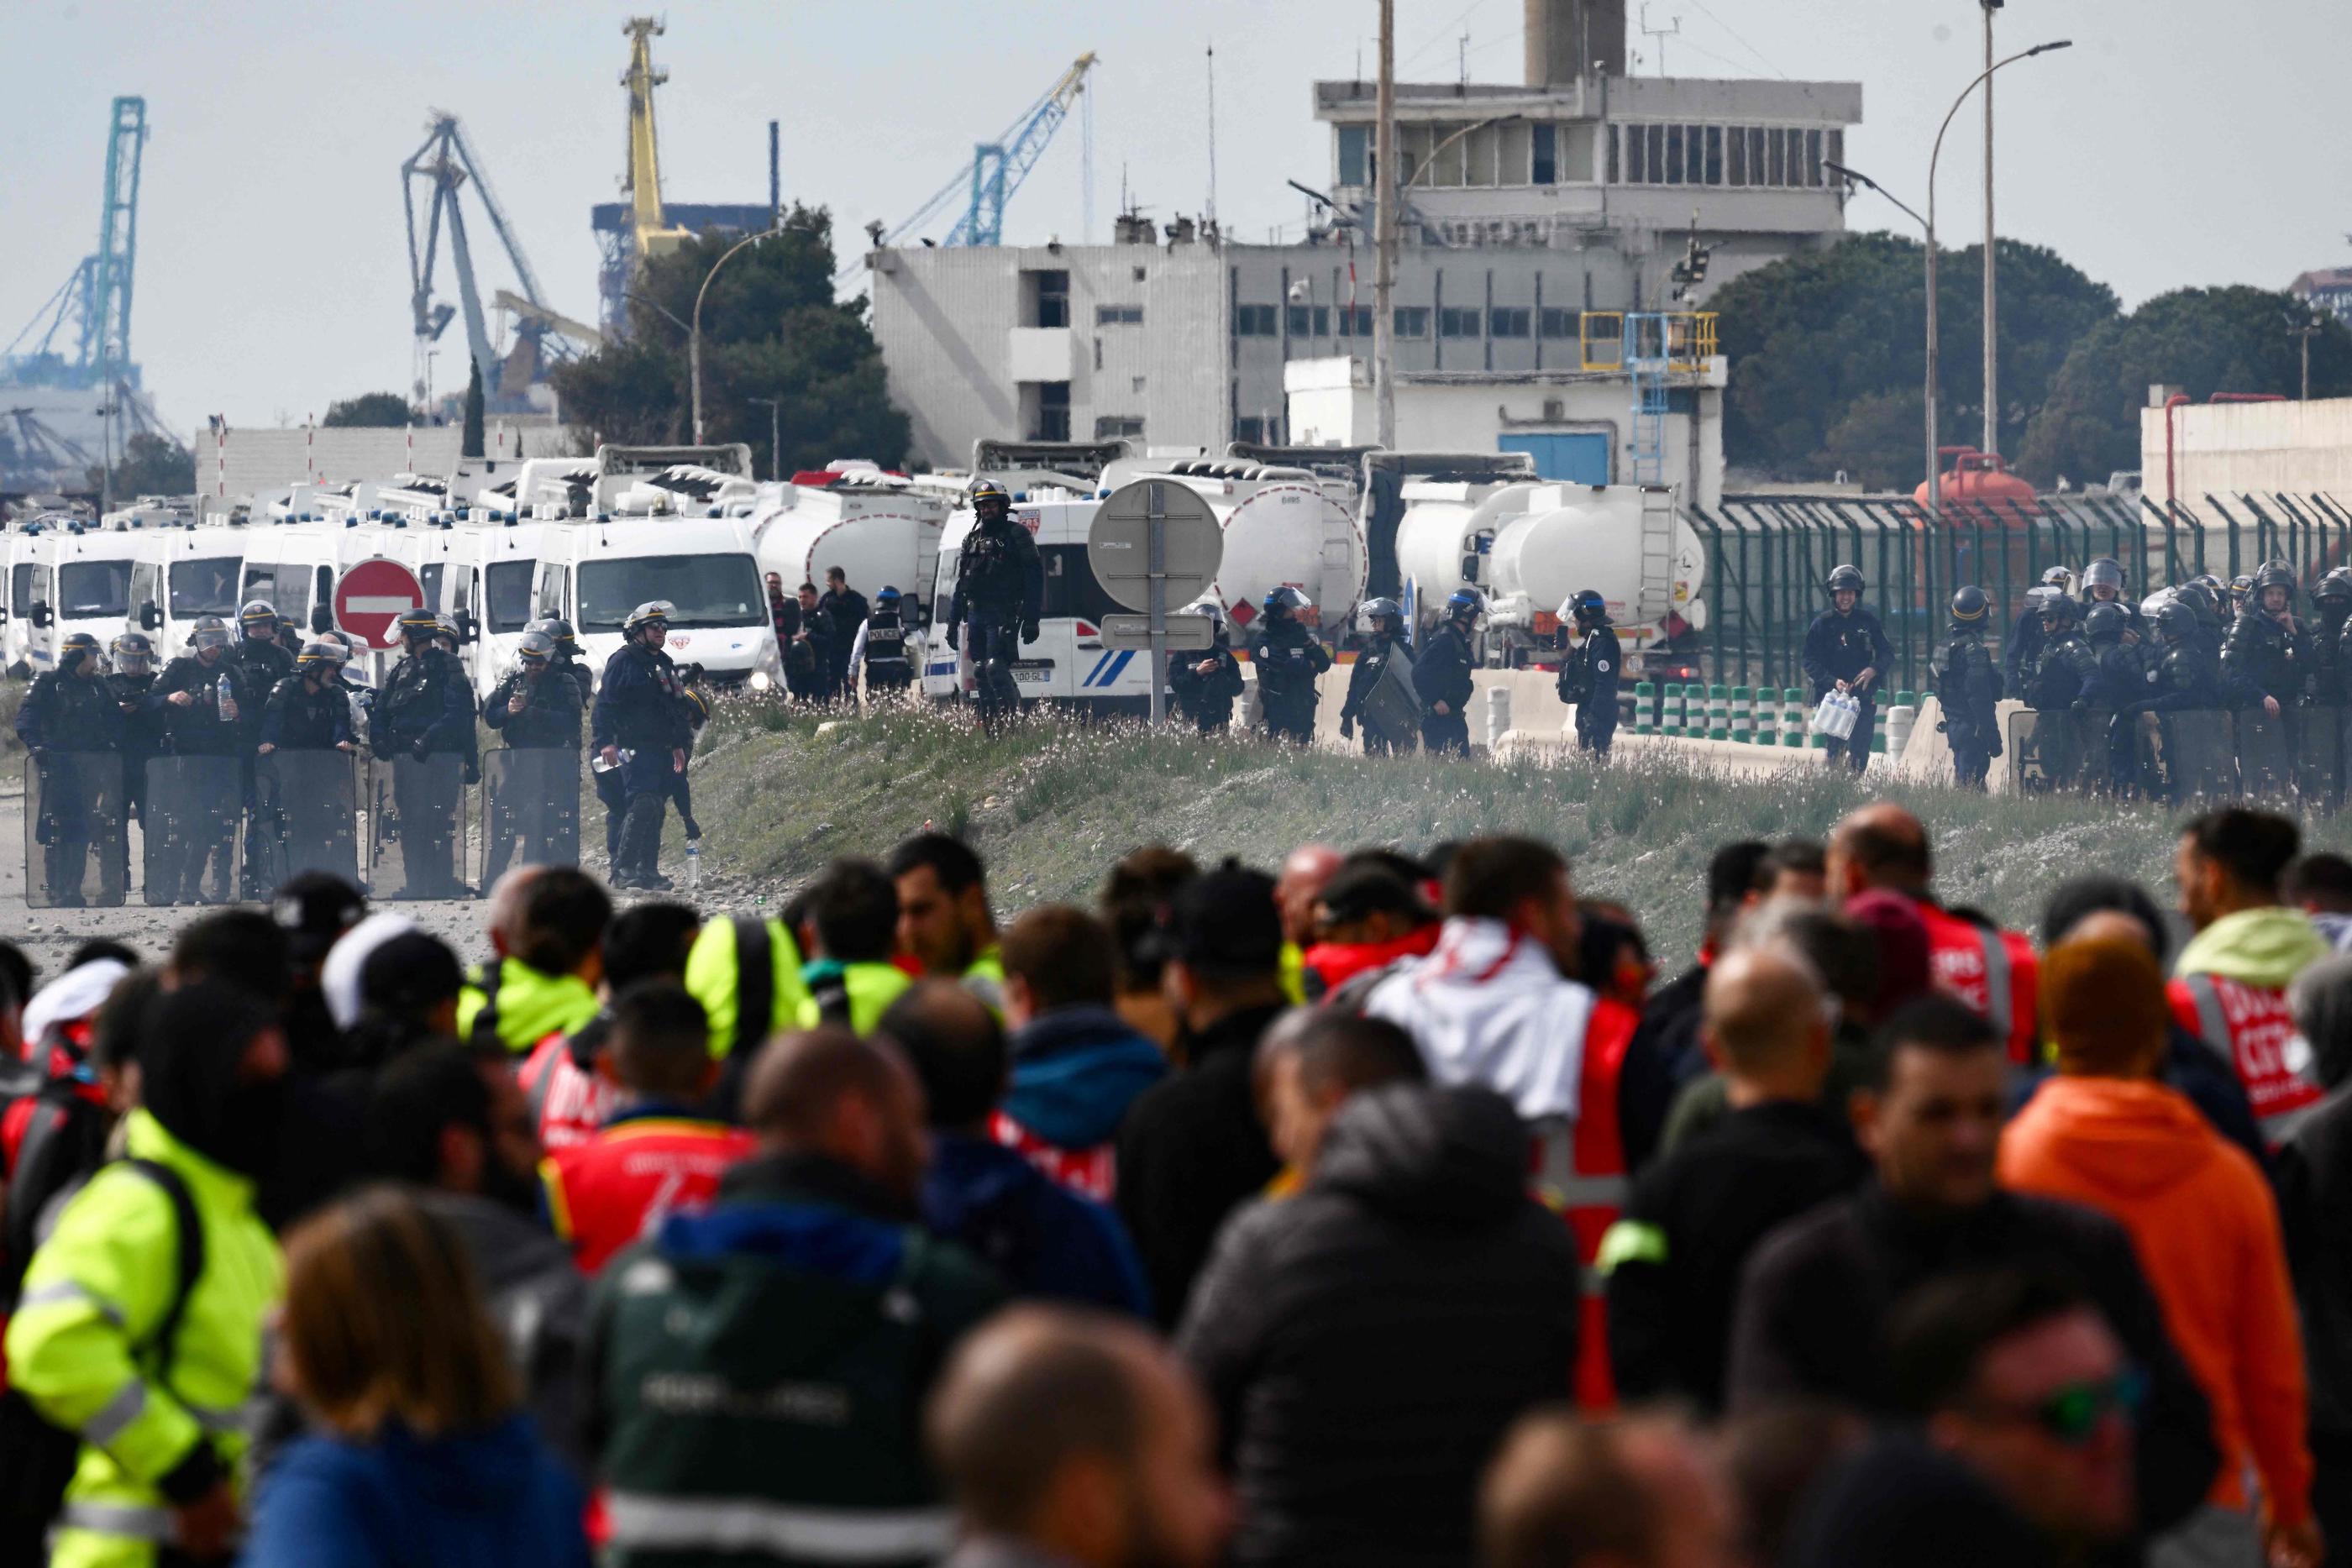 Fos-sur-Mer (Bouches-du-Rhône), mardi. Des grévistes font face aux forces de l'ordre sur le site d'une raffinerie. AFP/Christophe Simon